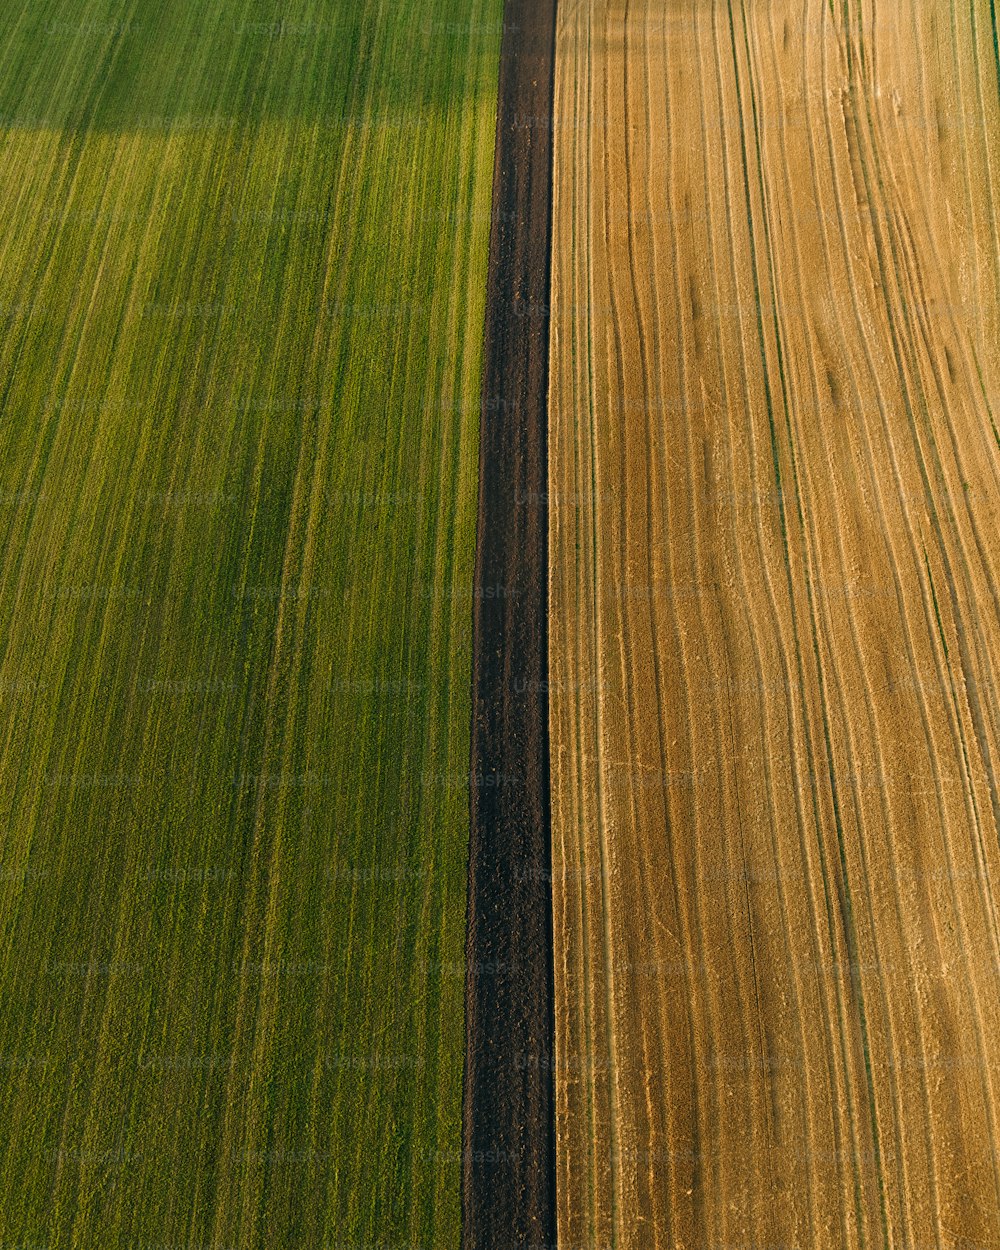 Una vista aérea de un campo agrícola con dos hileras de hierba verde